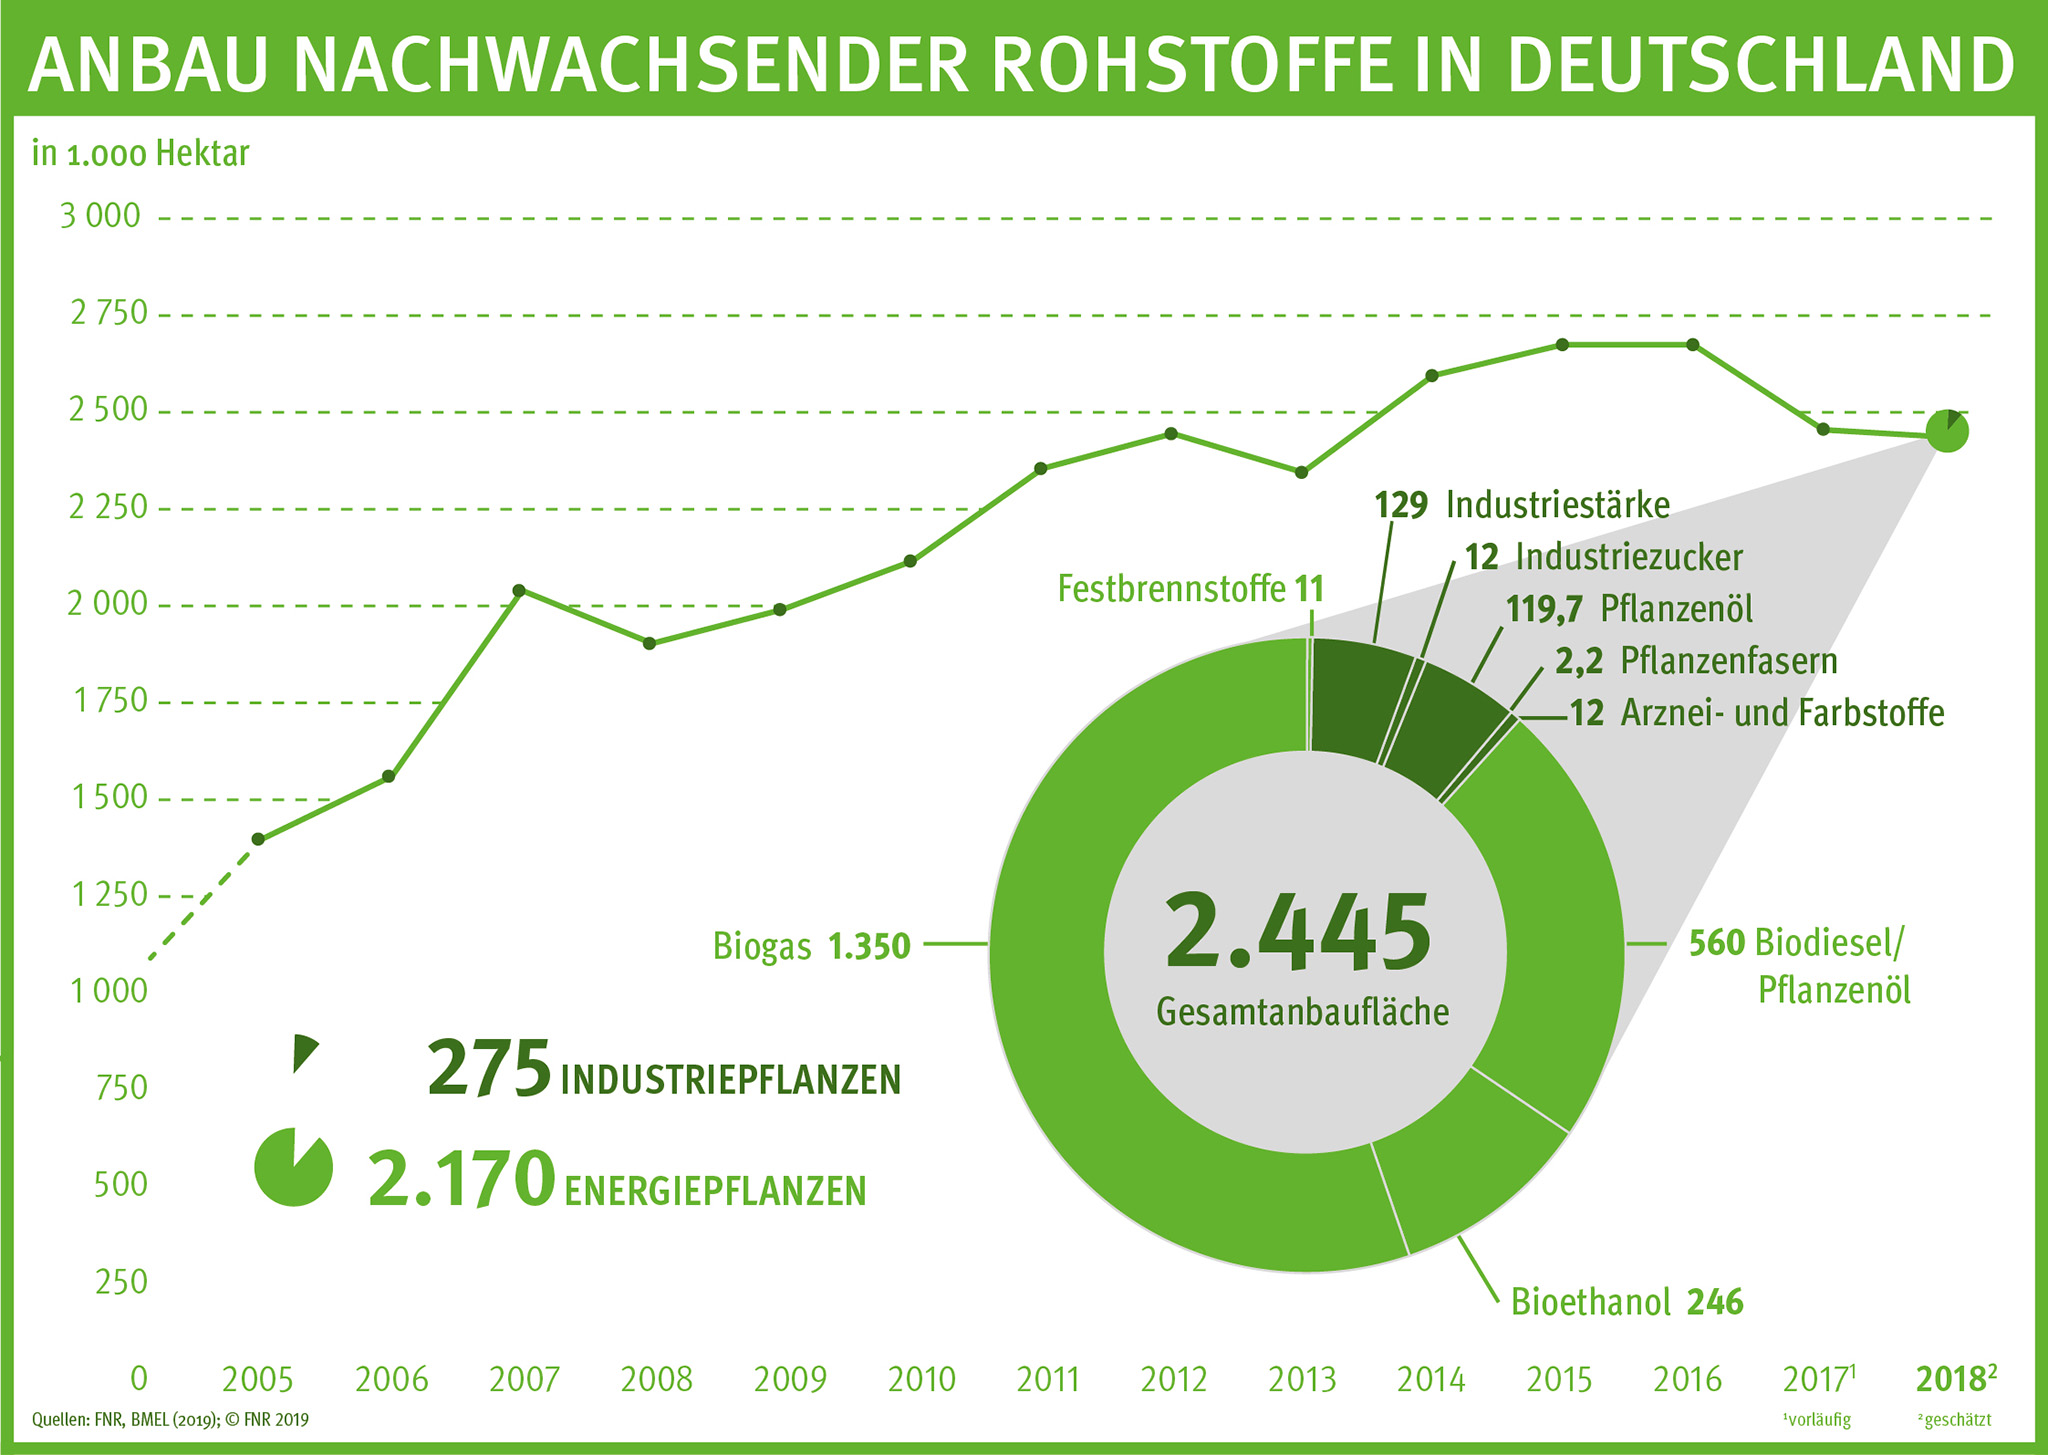 Grafik zur Anbaufläche von nachwachsenden Rohstoffen in Deutschland von 2005 bis 2017.